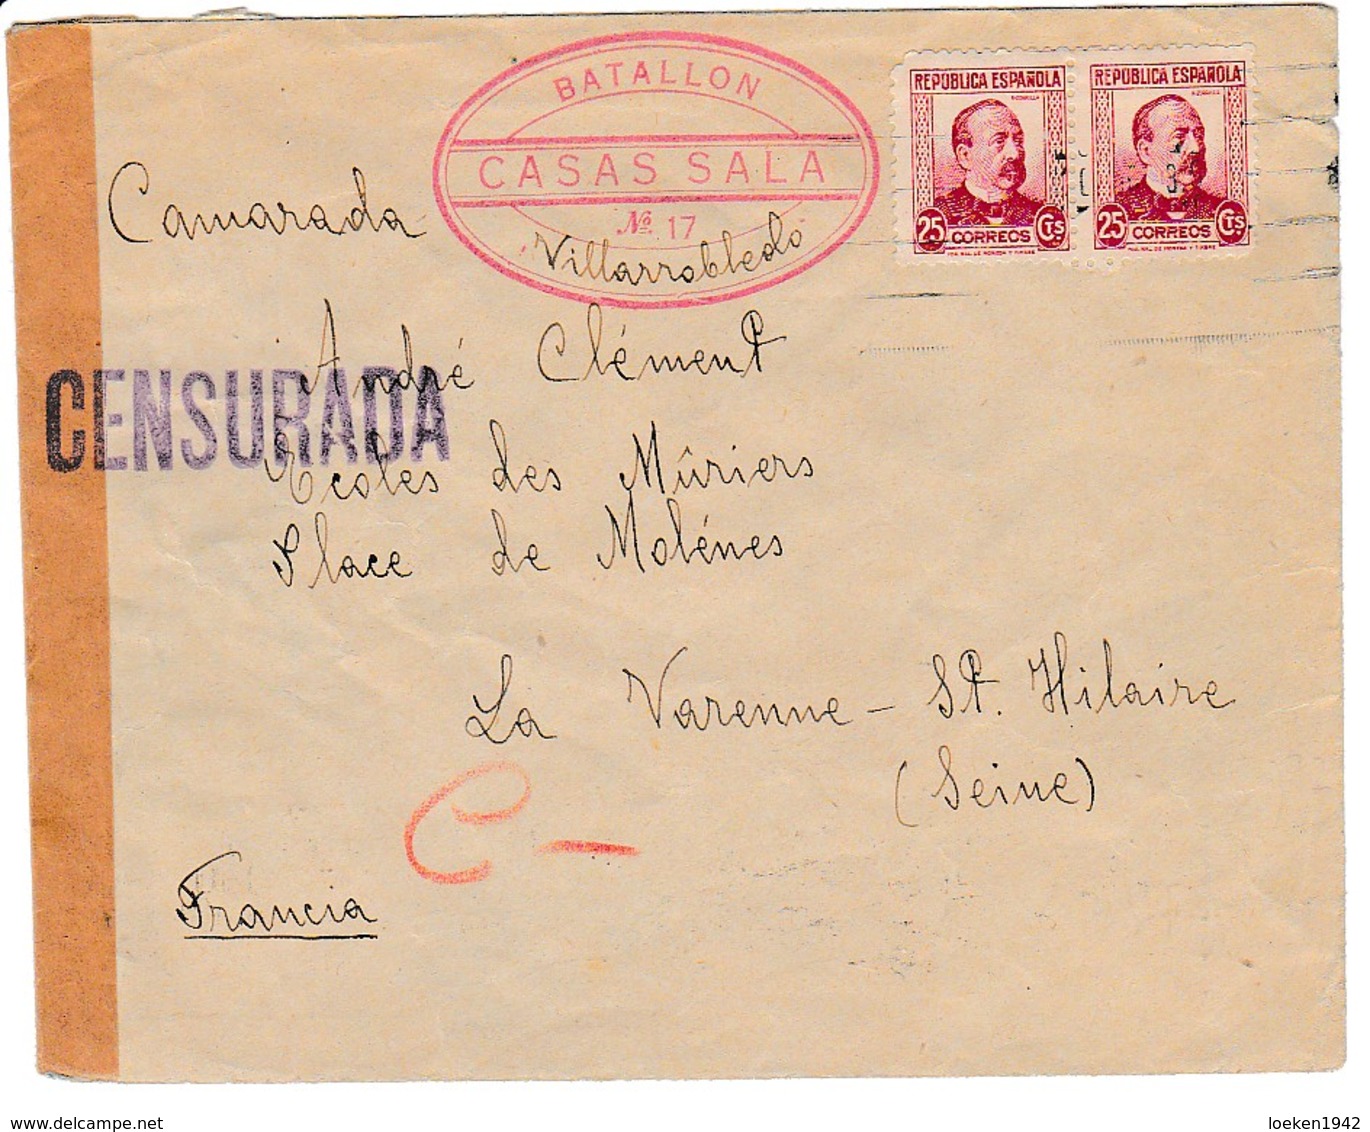 GUERRA CIVIL 1936 BATALLON CASAS SALA N°17 VILLAROBLEDO ELA129 - Cartas & Documentos